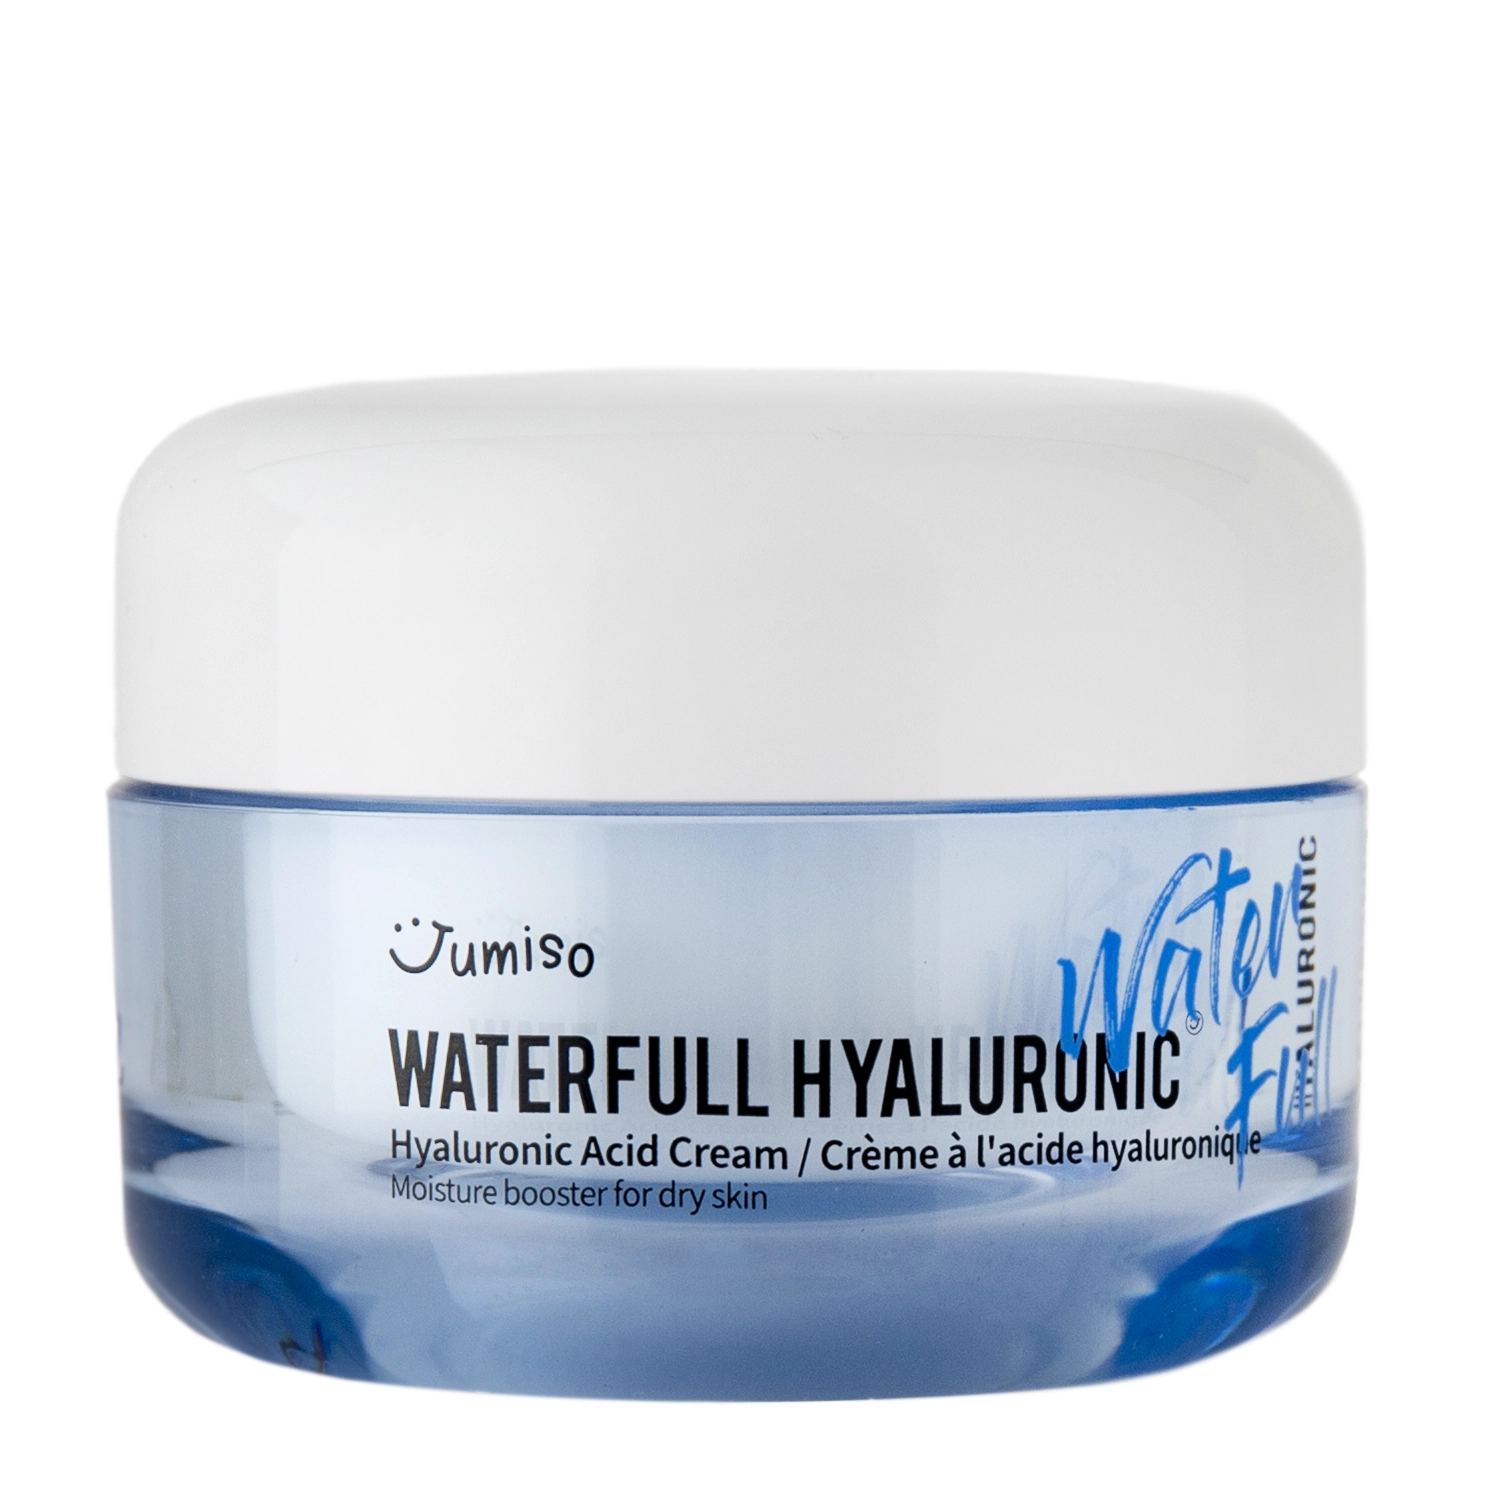 Jumiso - Waterfull Hyaluronic Cream - Nawilżający Krem do Twarzy z Kwasem Hialuronowym - 50ml